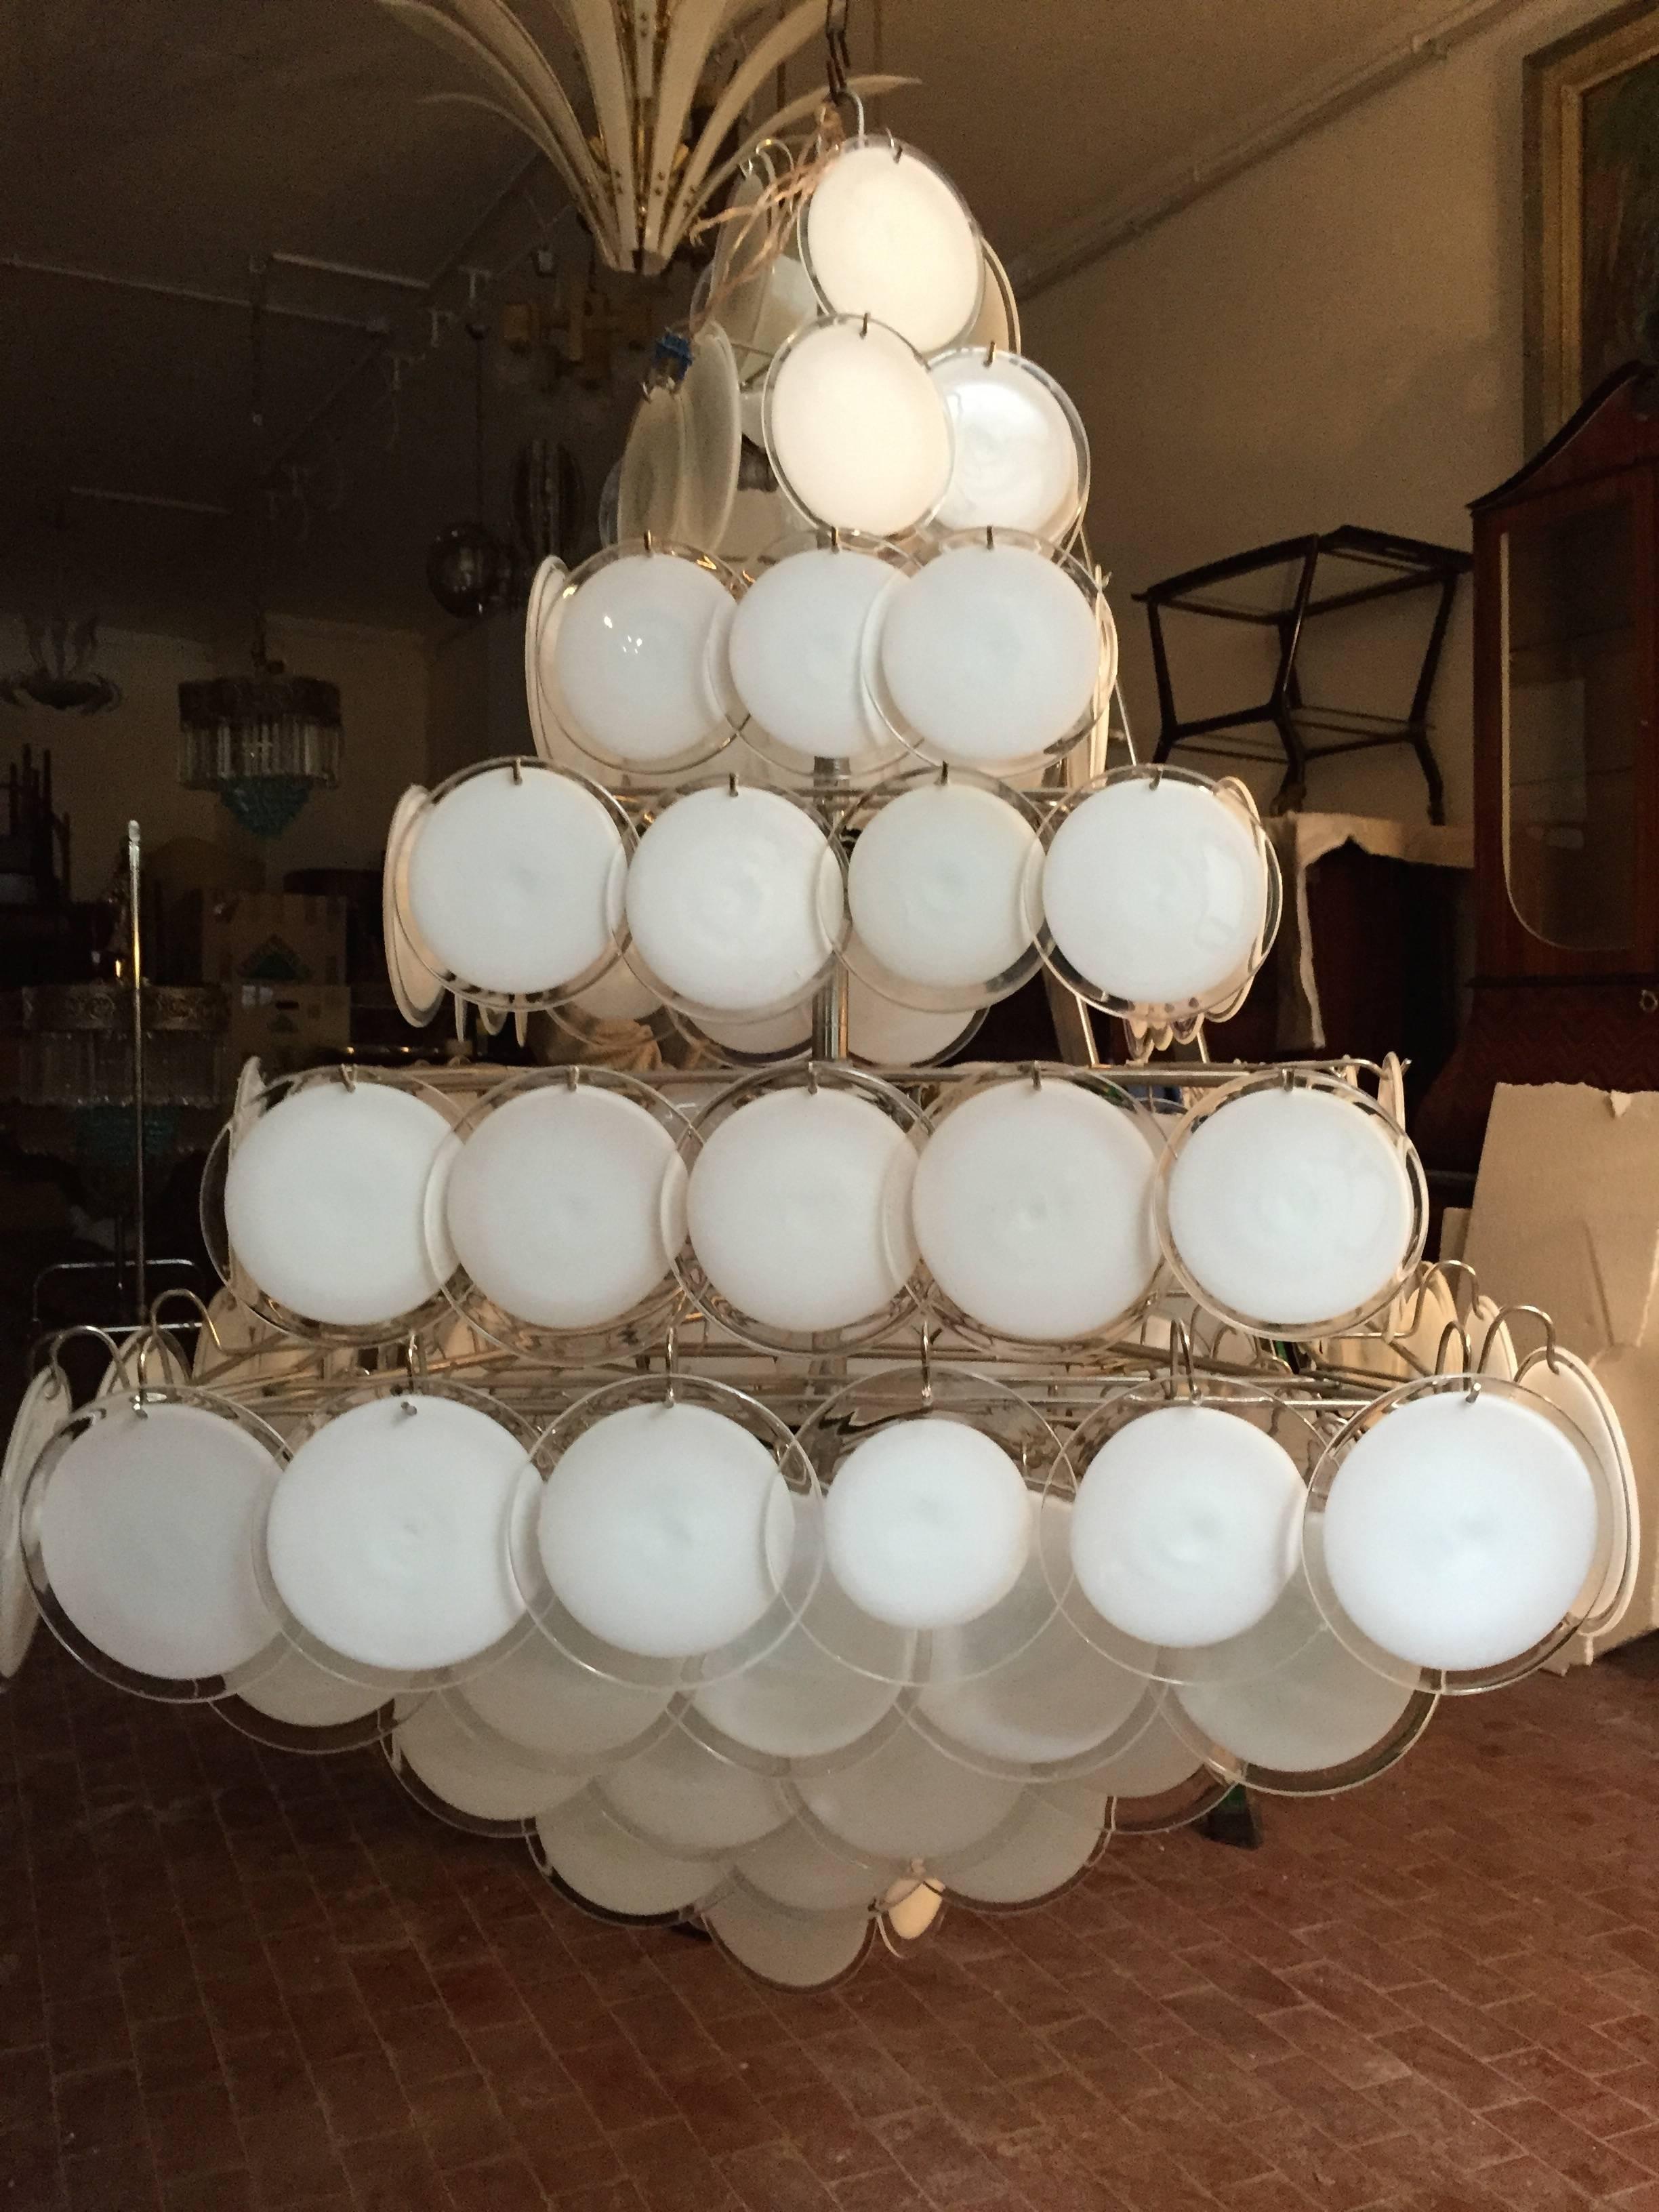 Ein Kronleuchter von seltener Schönheit und Eleganz. 136 Scheiben aus Muranoglas, die in zehn Reihen angeordnet sind und zwei sich überlappende Pyramiden bilden. Ein Paar ist verfügbar.